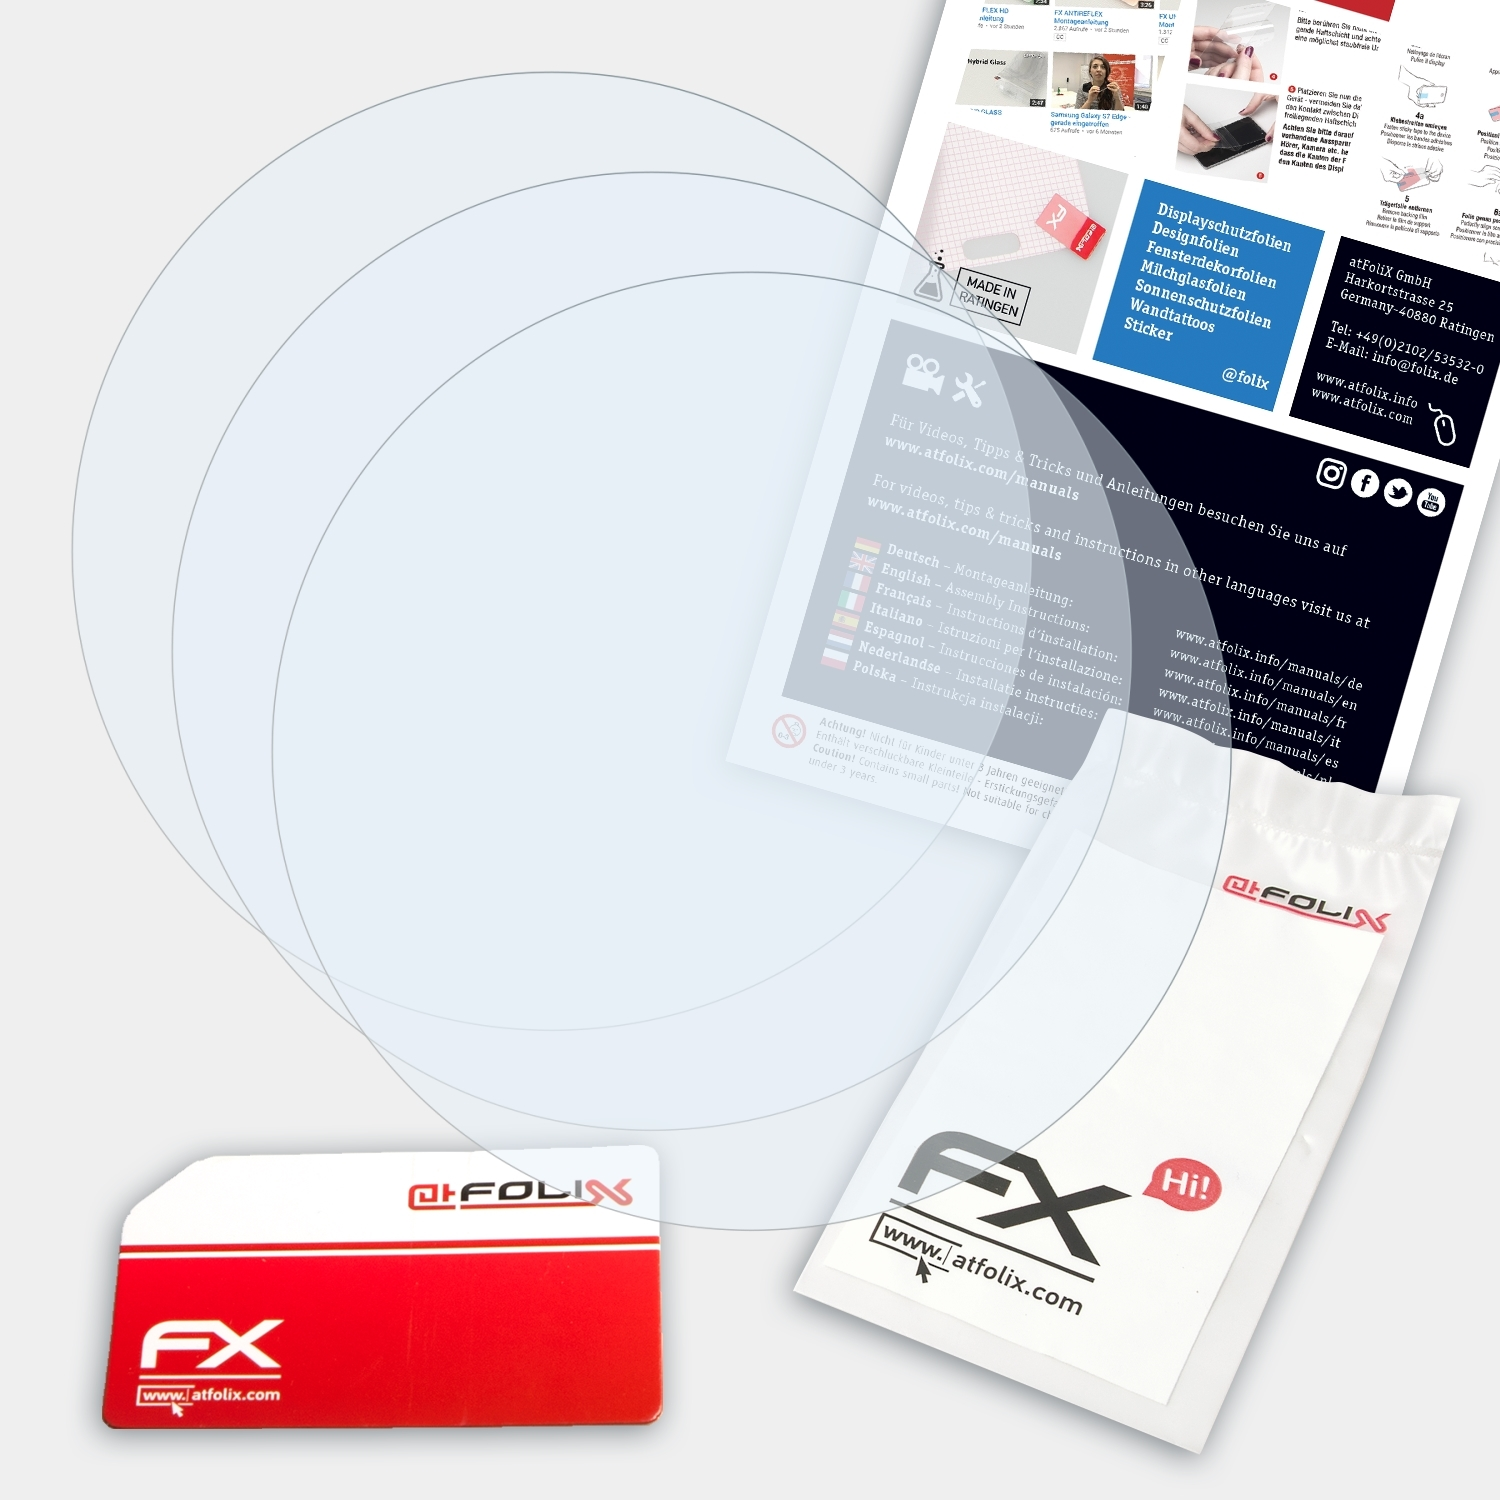 FX-Clear Casio PRG-240-1ER) 3x ATFOLIX Displayschutz(für